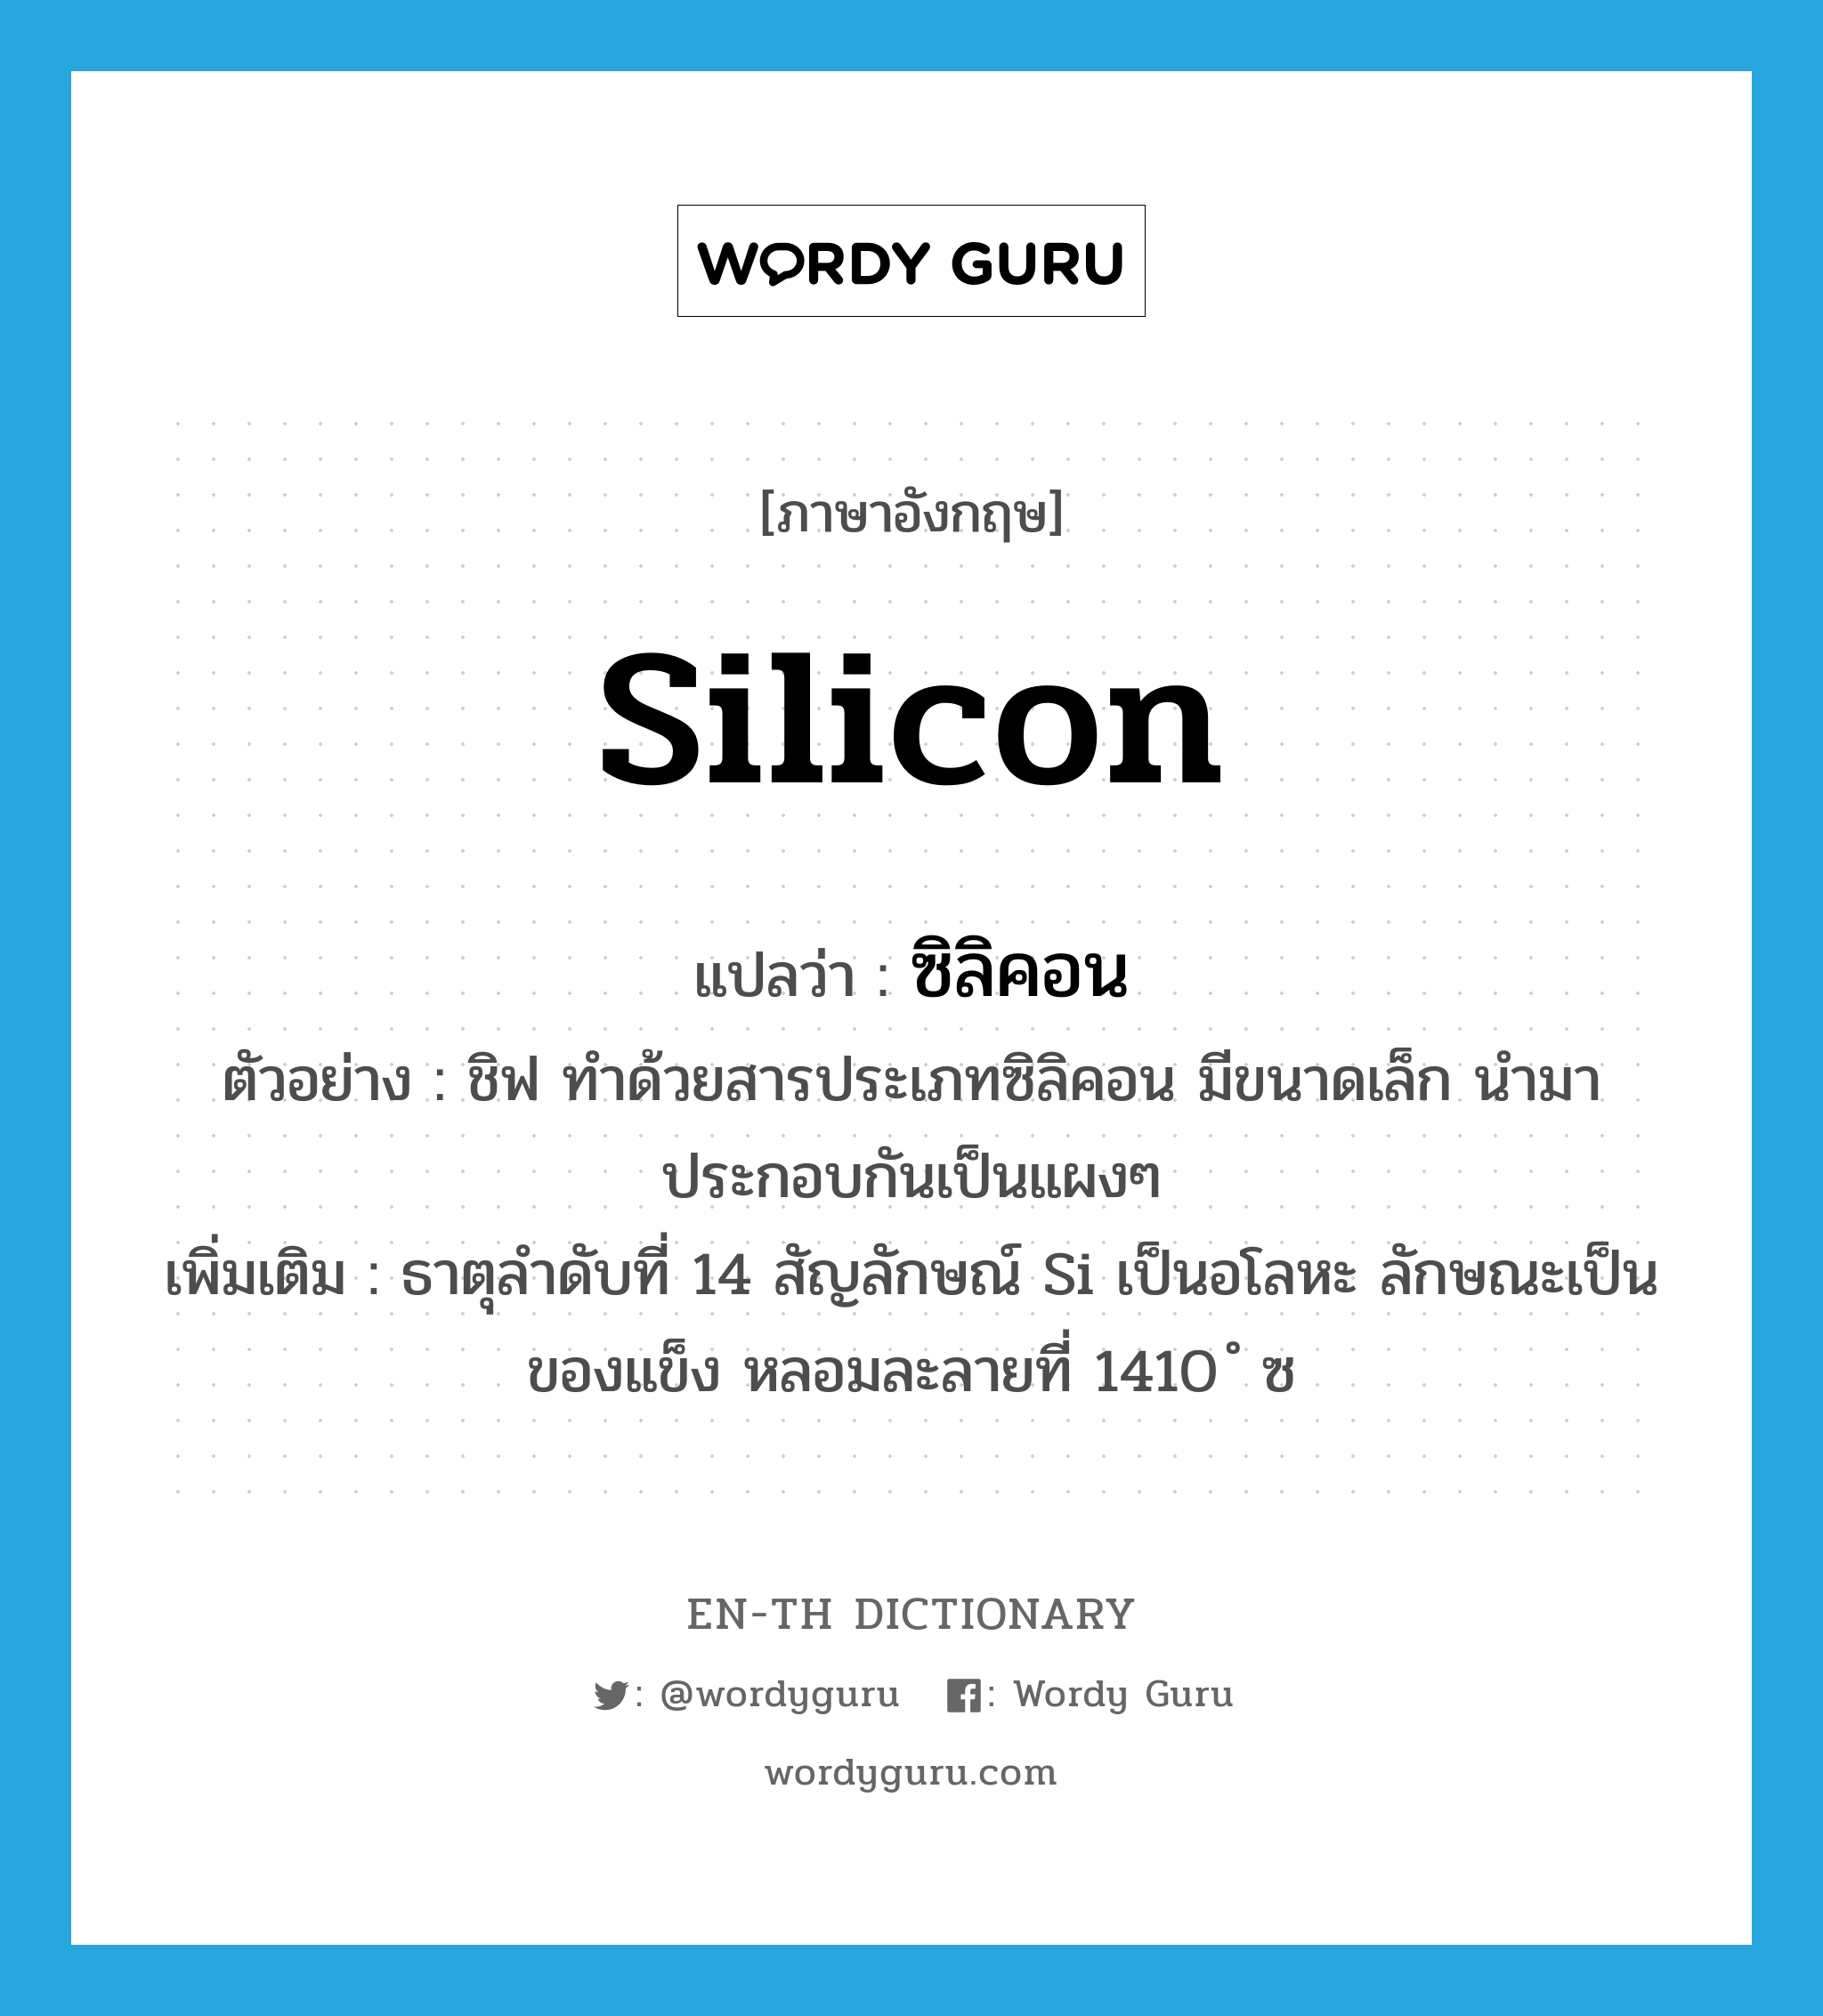 silicon แปลว่า?, คำศัพท์ภาษาอังกฤษ silicon แปลว่า ซิลิคอน ประเภท N ตัวอย่าง ชิฟ ทำด้วยสารประเภทซิลิคอน มีขนาดเล็ก นำมาประกอบกันเป็นแผงๆ เพิ่มเติม ธาตุลำดับที่ 14 สัญลักษณ์ Si เป็นอโลหะ ลักษณะเป็นของแข็ง หลอมละลายที่ 1410 ํ ซ หมวด N